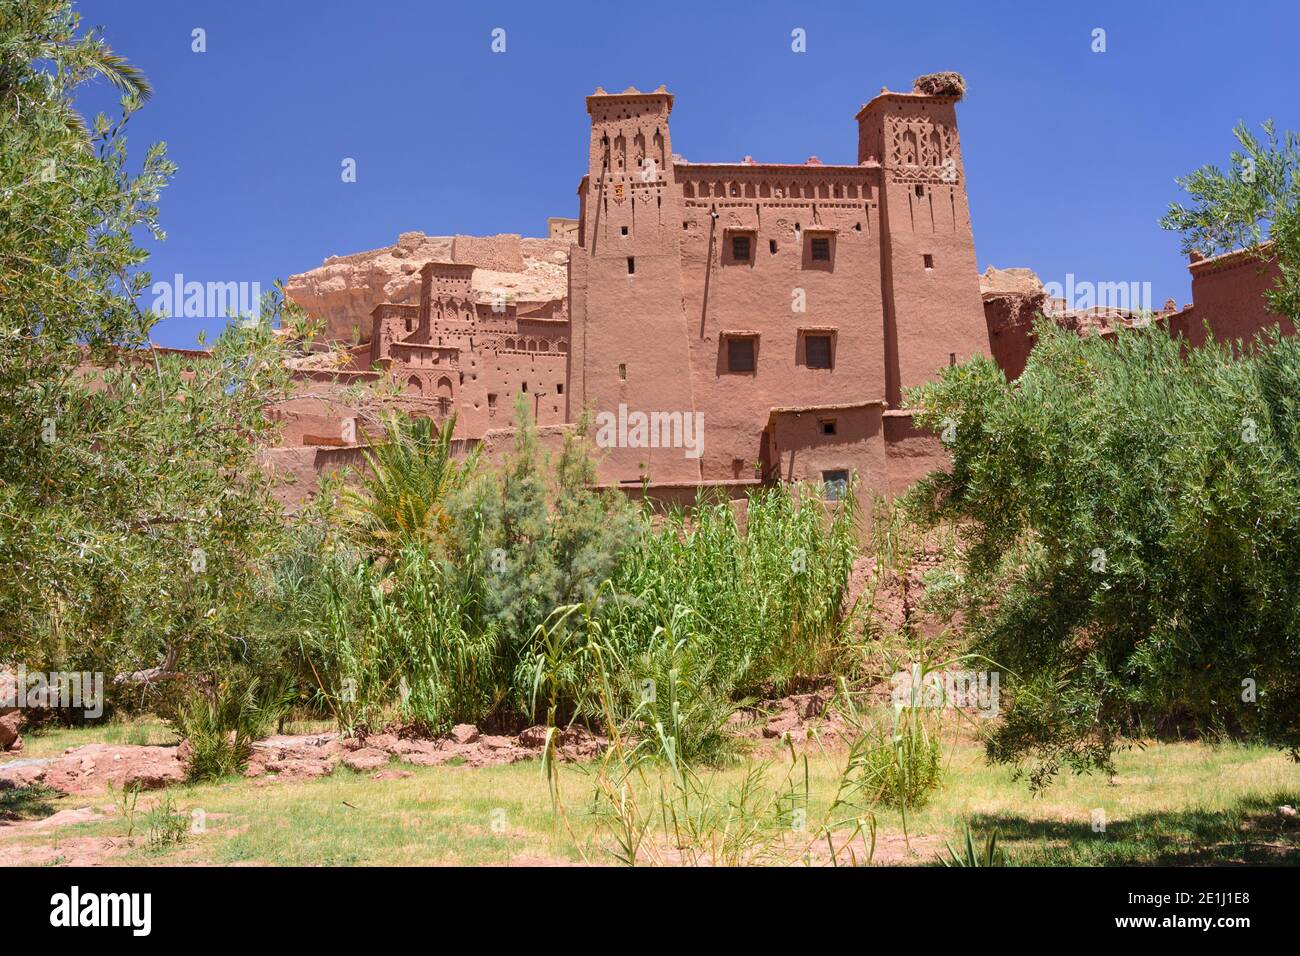 Aït Benhaddou, uno storico alto rom o ksar (villaggio fortificato) lungo l'ex carovana rotta tra il Sahara e Marrakech, nell'attuale Marocco. Foto Stock